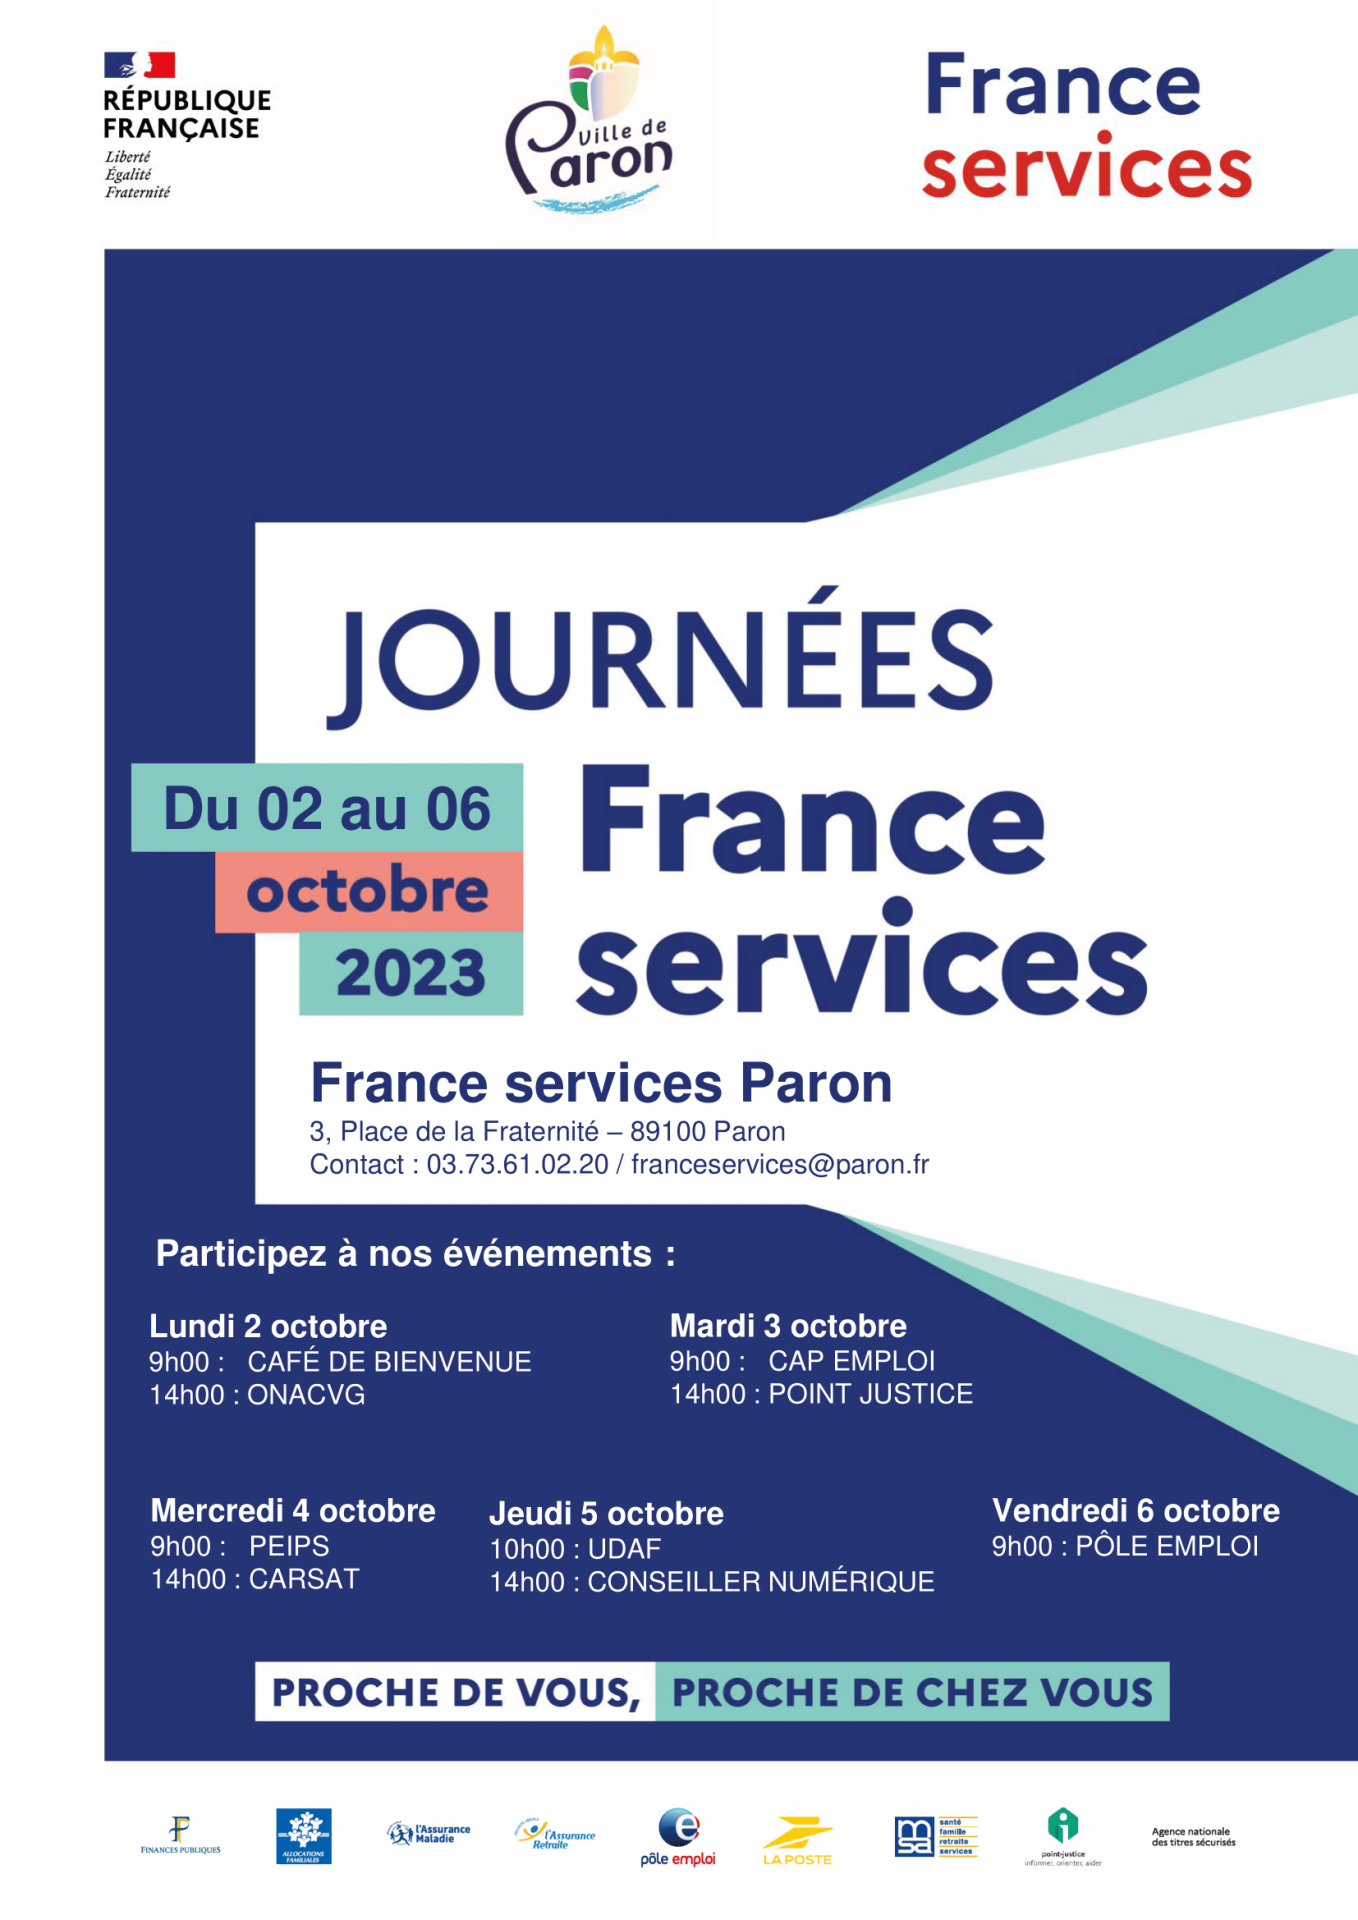 Journées France Services - Du 02 au 06 Octobre 2023